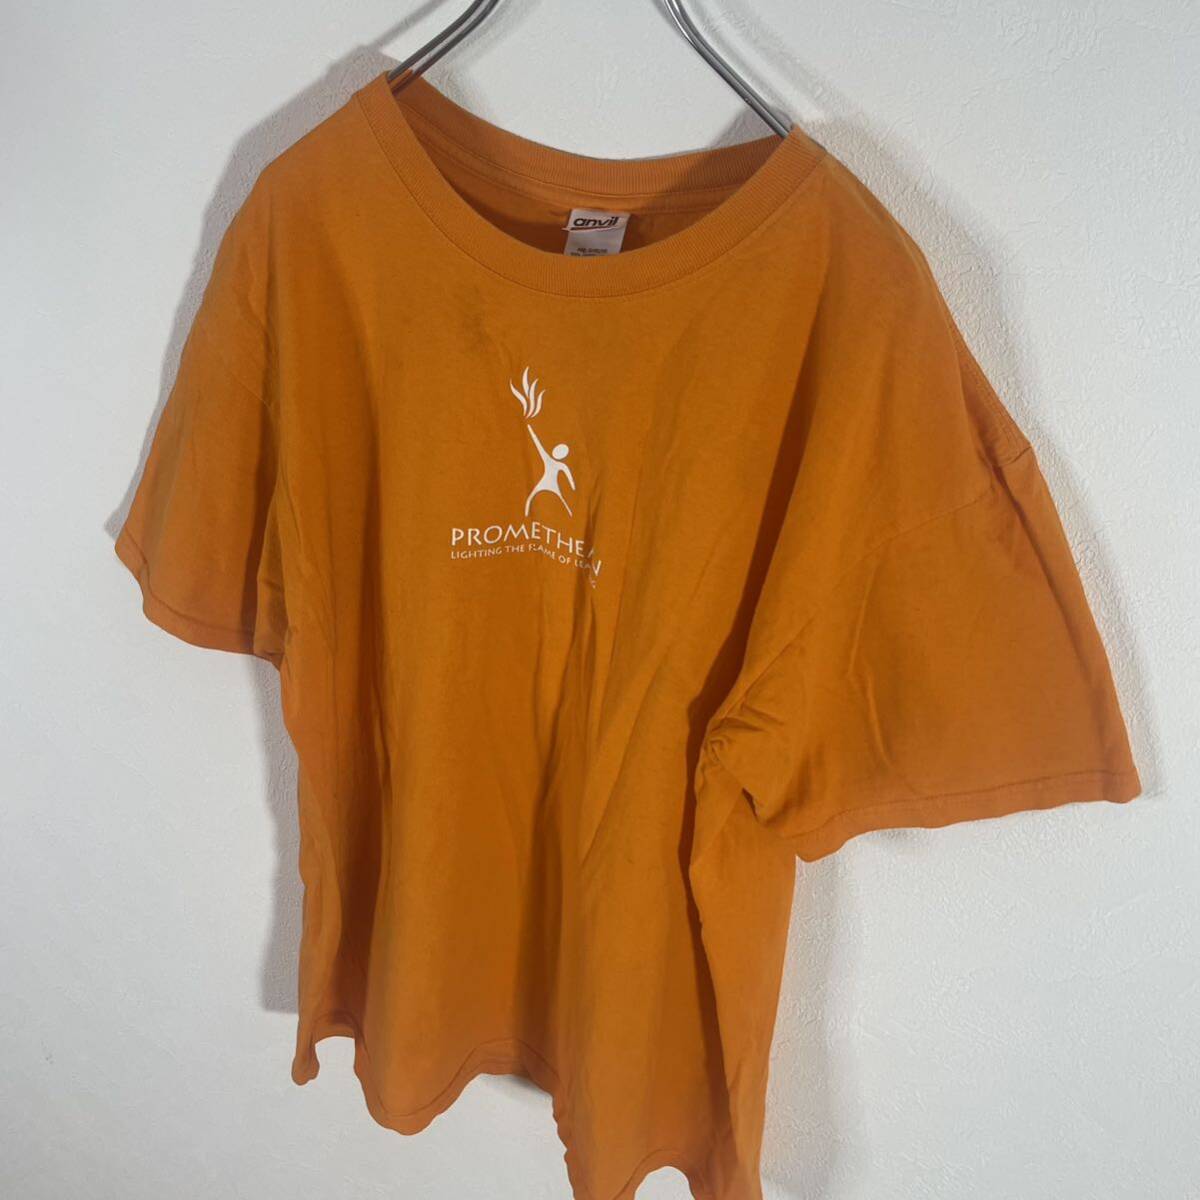 anvil アンヴィル メンズ 半袖 プロミシアン 企業ロゴ プリント ヴィンテージ Tシャツ 半袖Tシャツ オレンジ XL 90's 古着 #TB0771